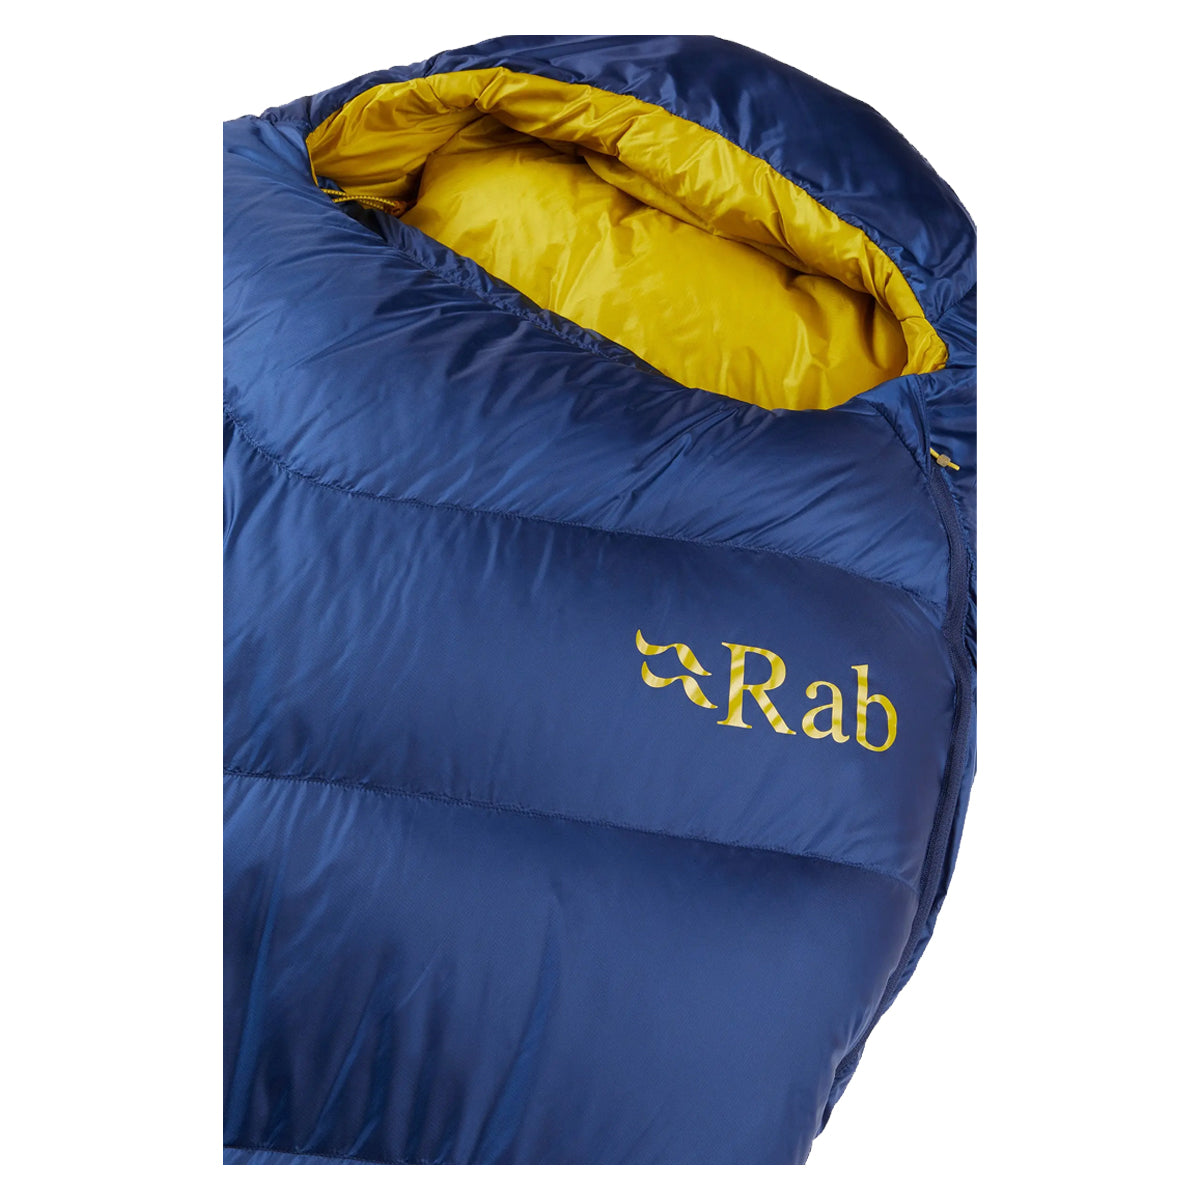 Rab Neutrino 400 Down Sleeping Bag